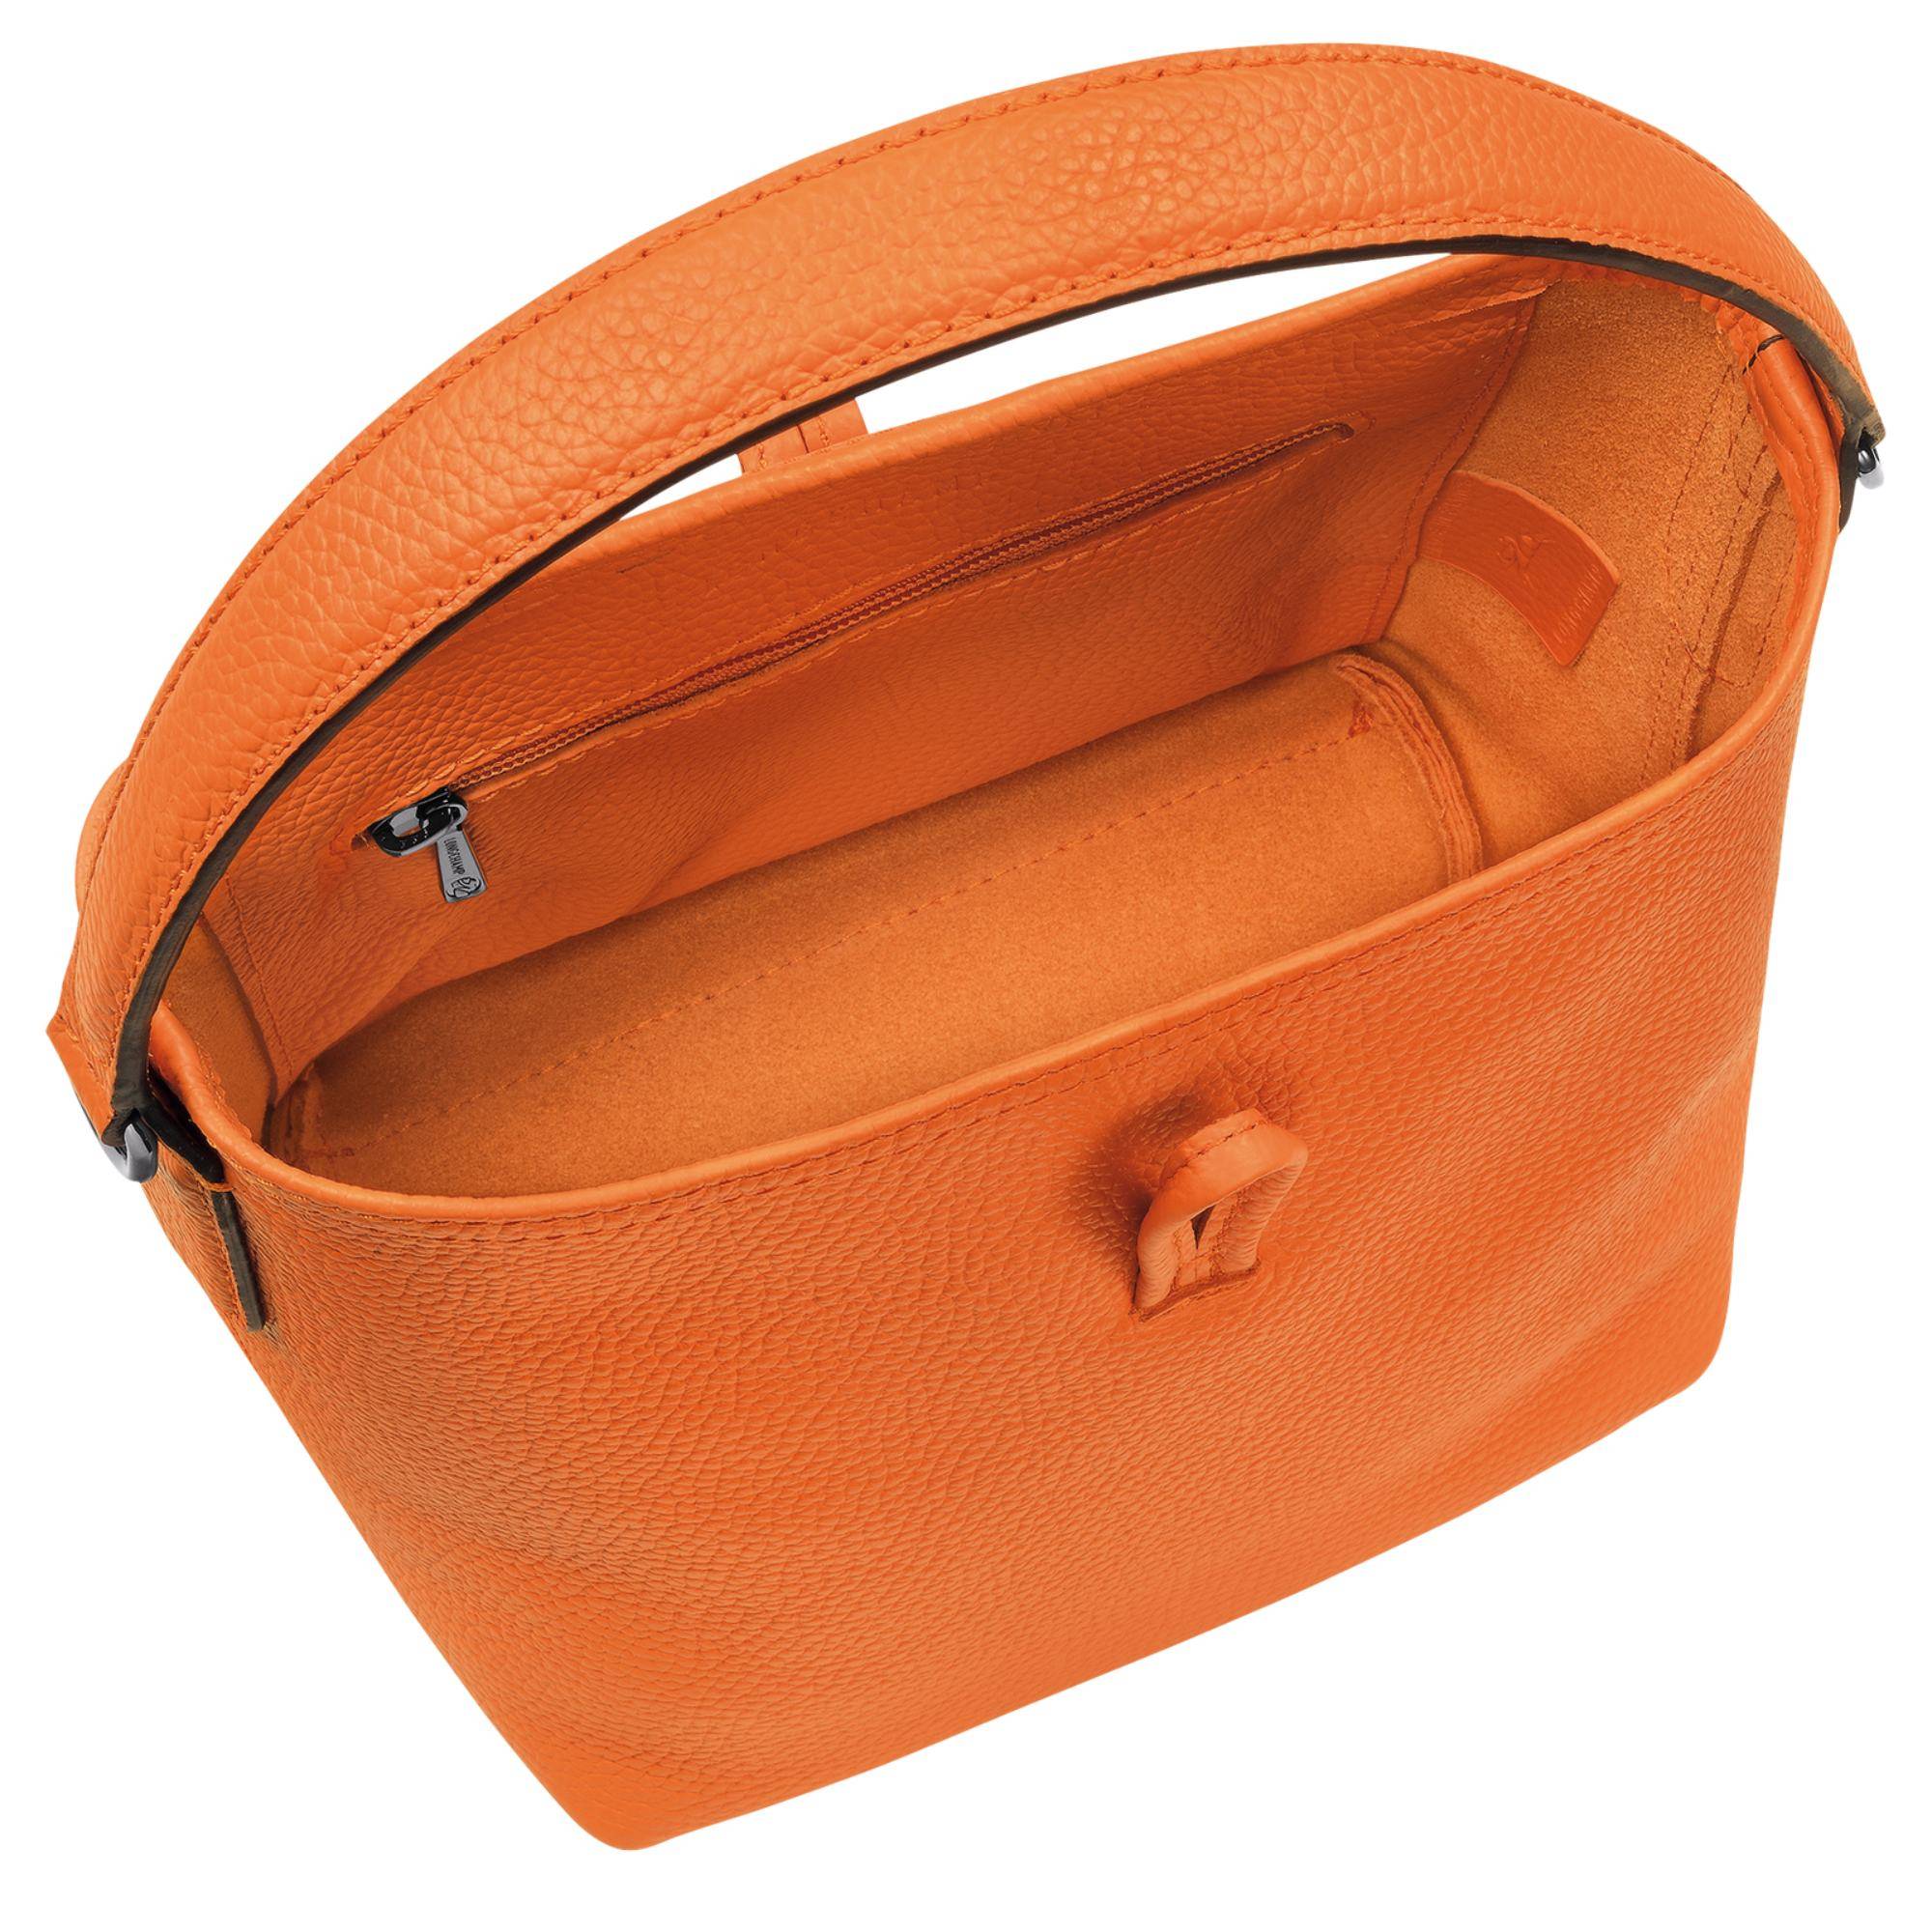 Sac seau Longchamp Roseau Essential S 10159 968 217 couleur orange, intérieur